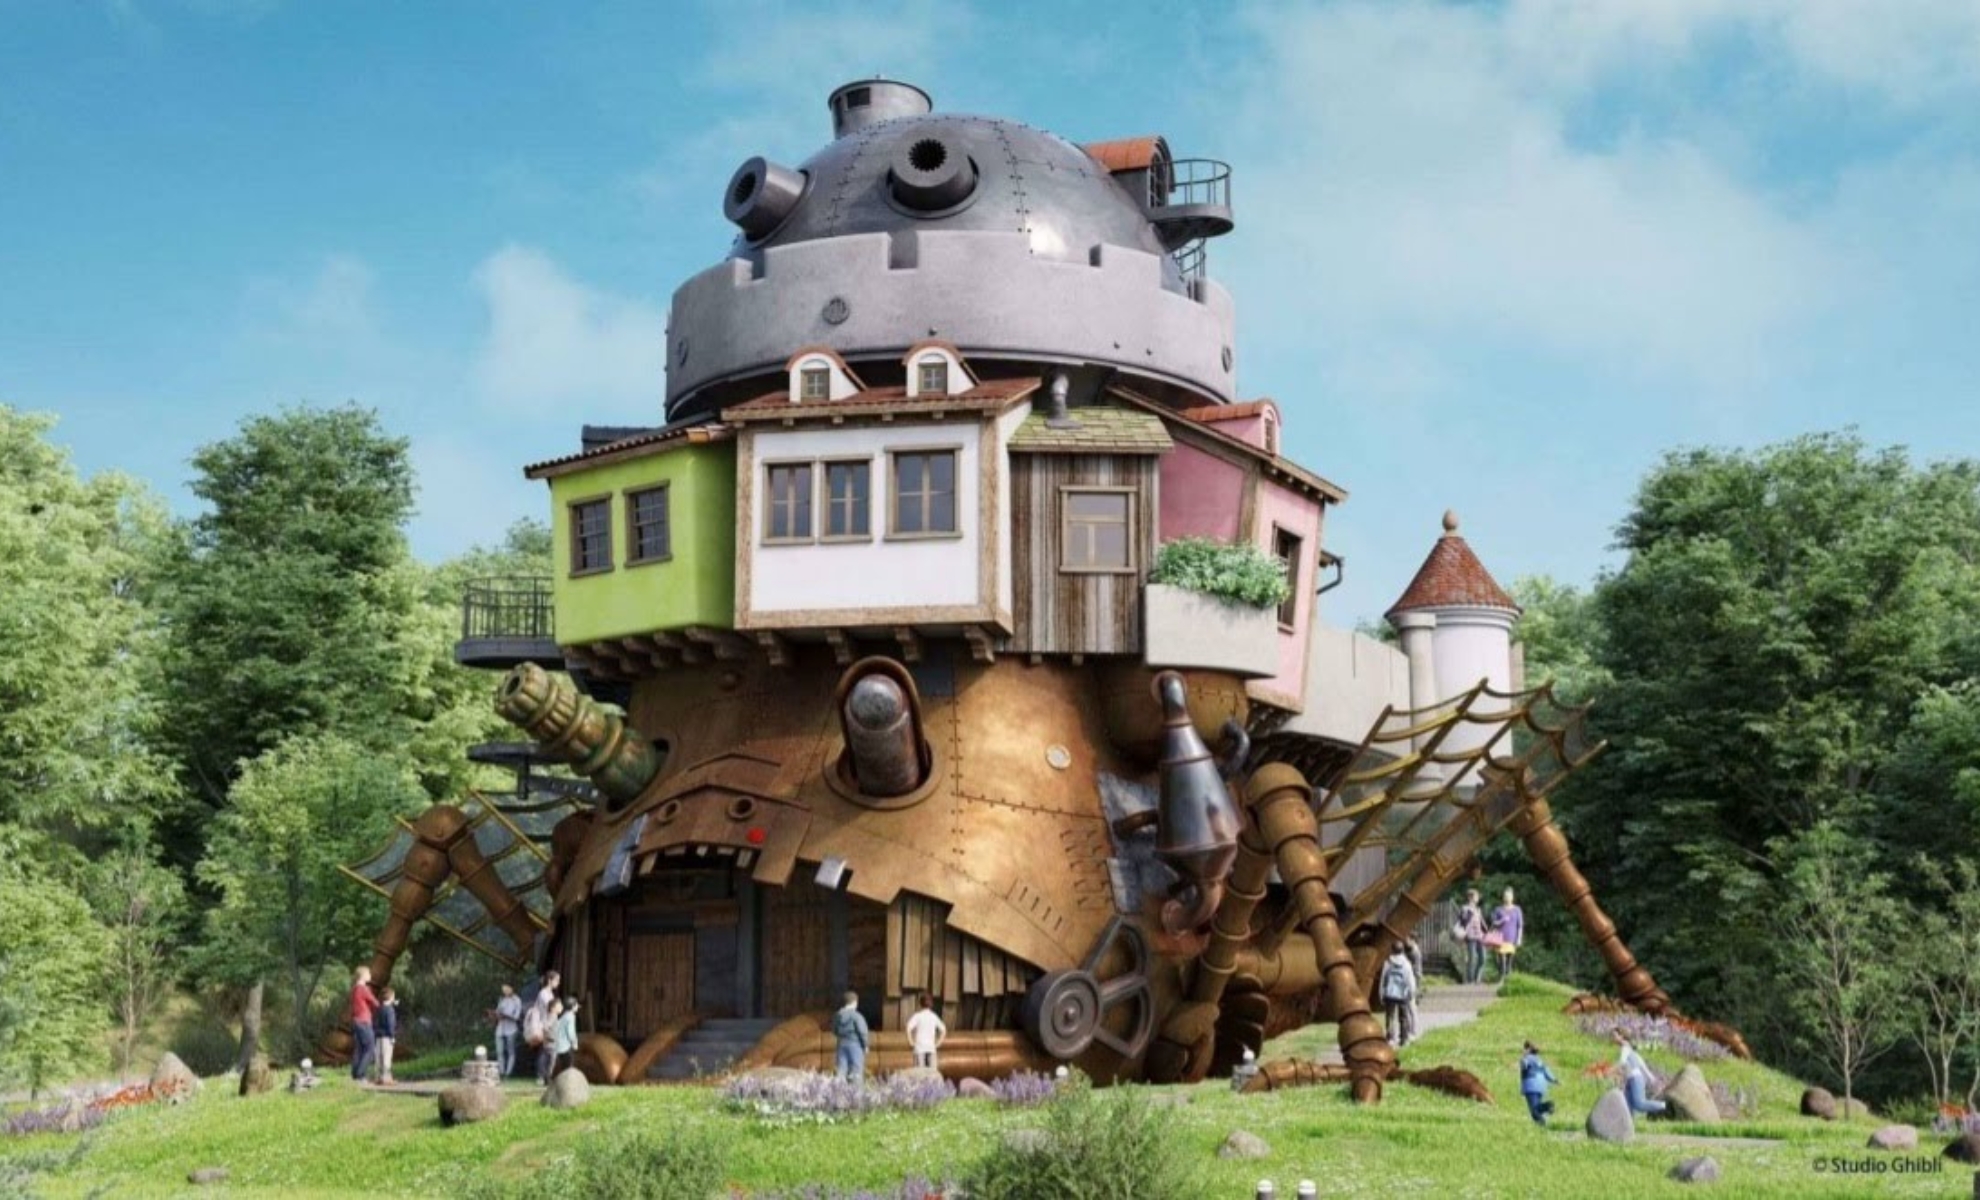 Réplique du chateau ambulant dans le Ghibli park